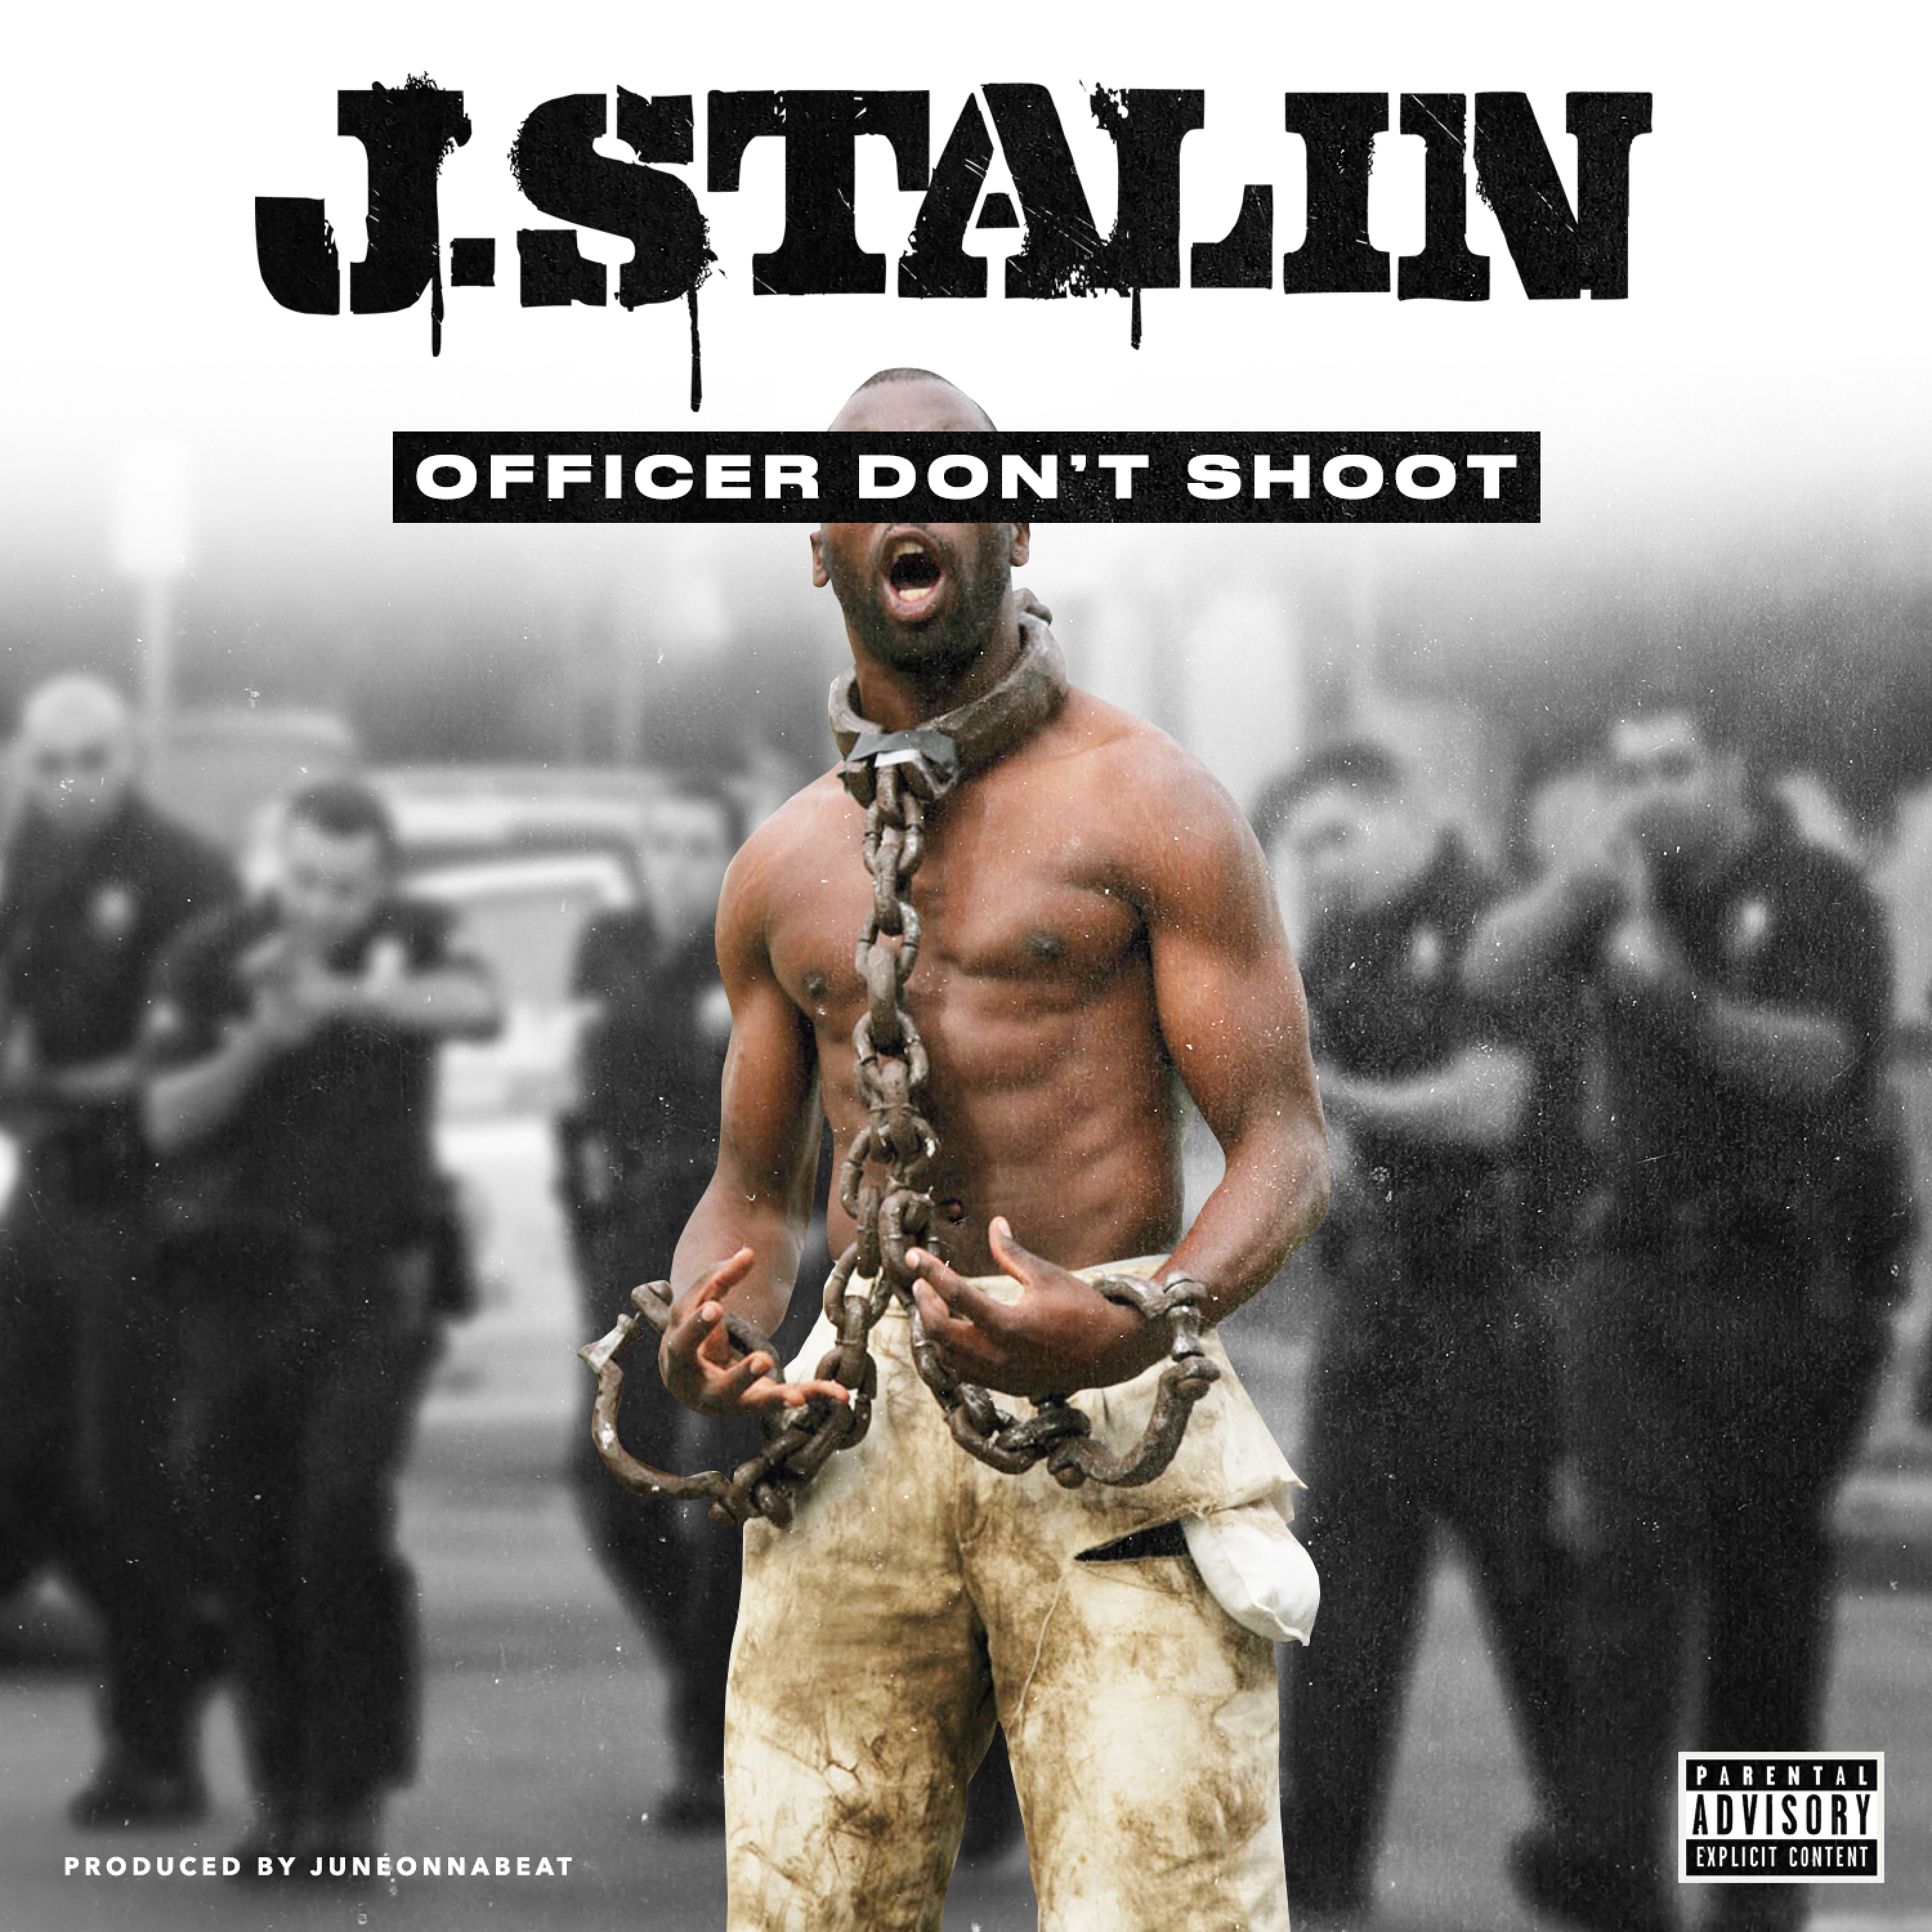 Officer Don't Shoot